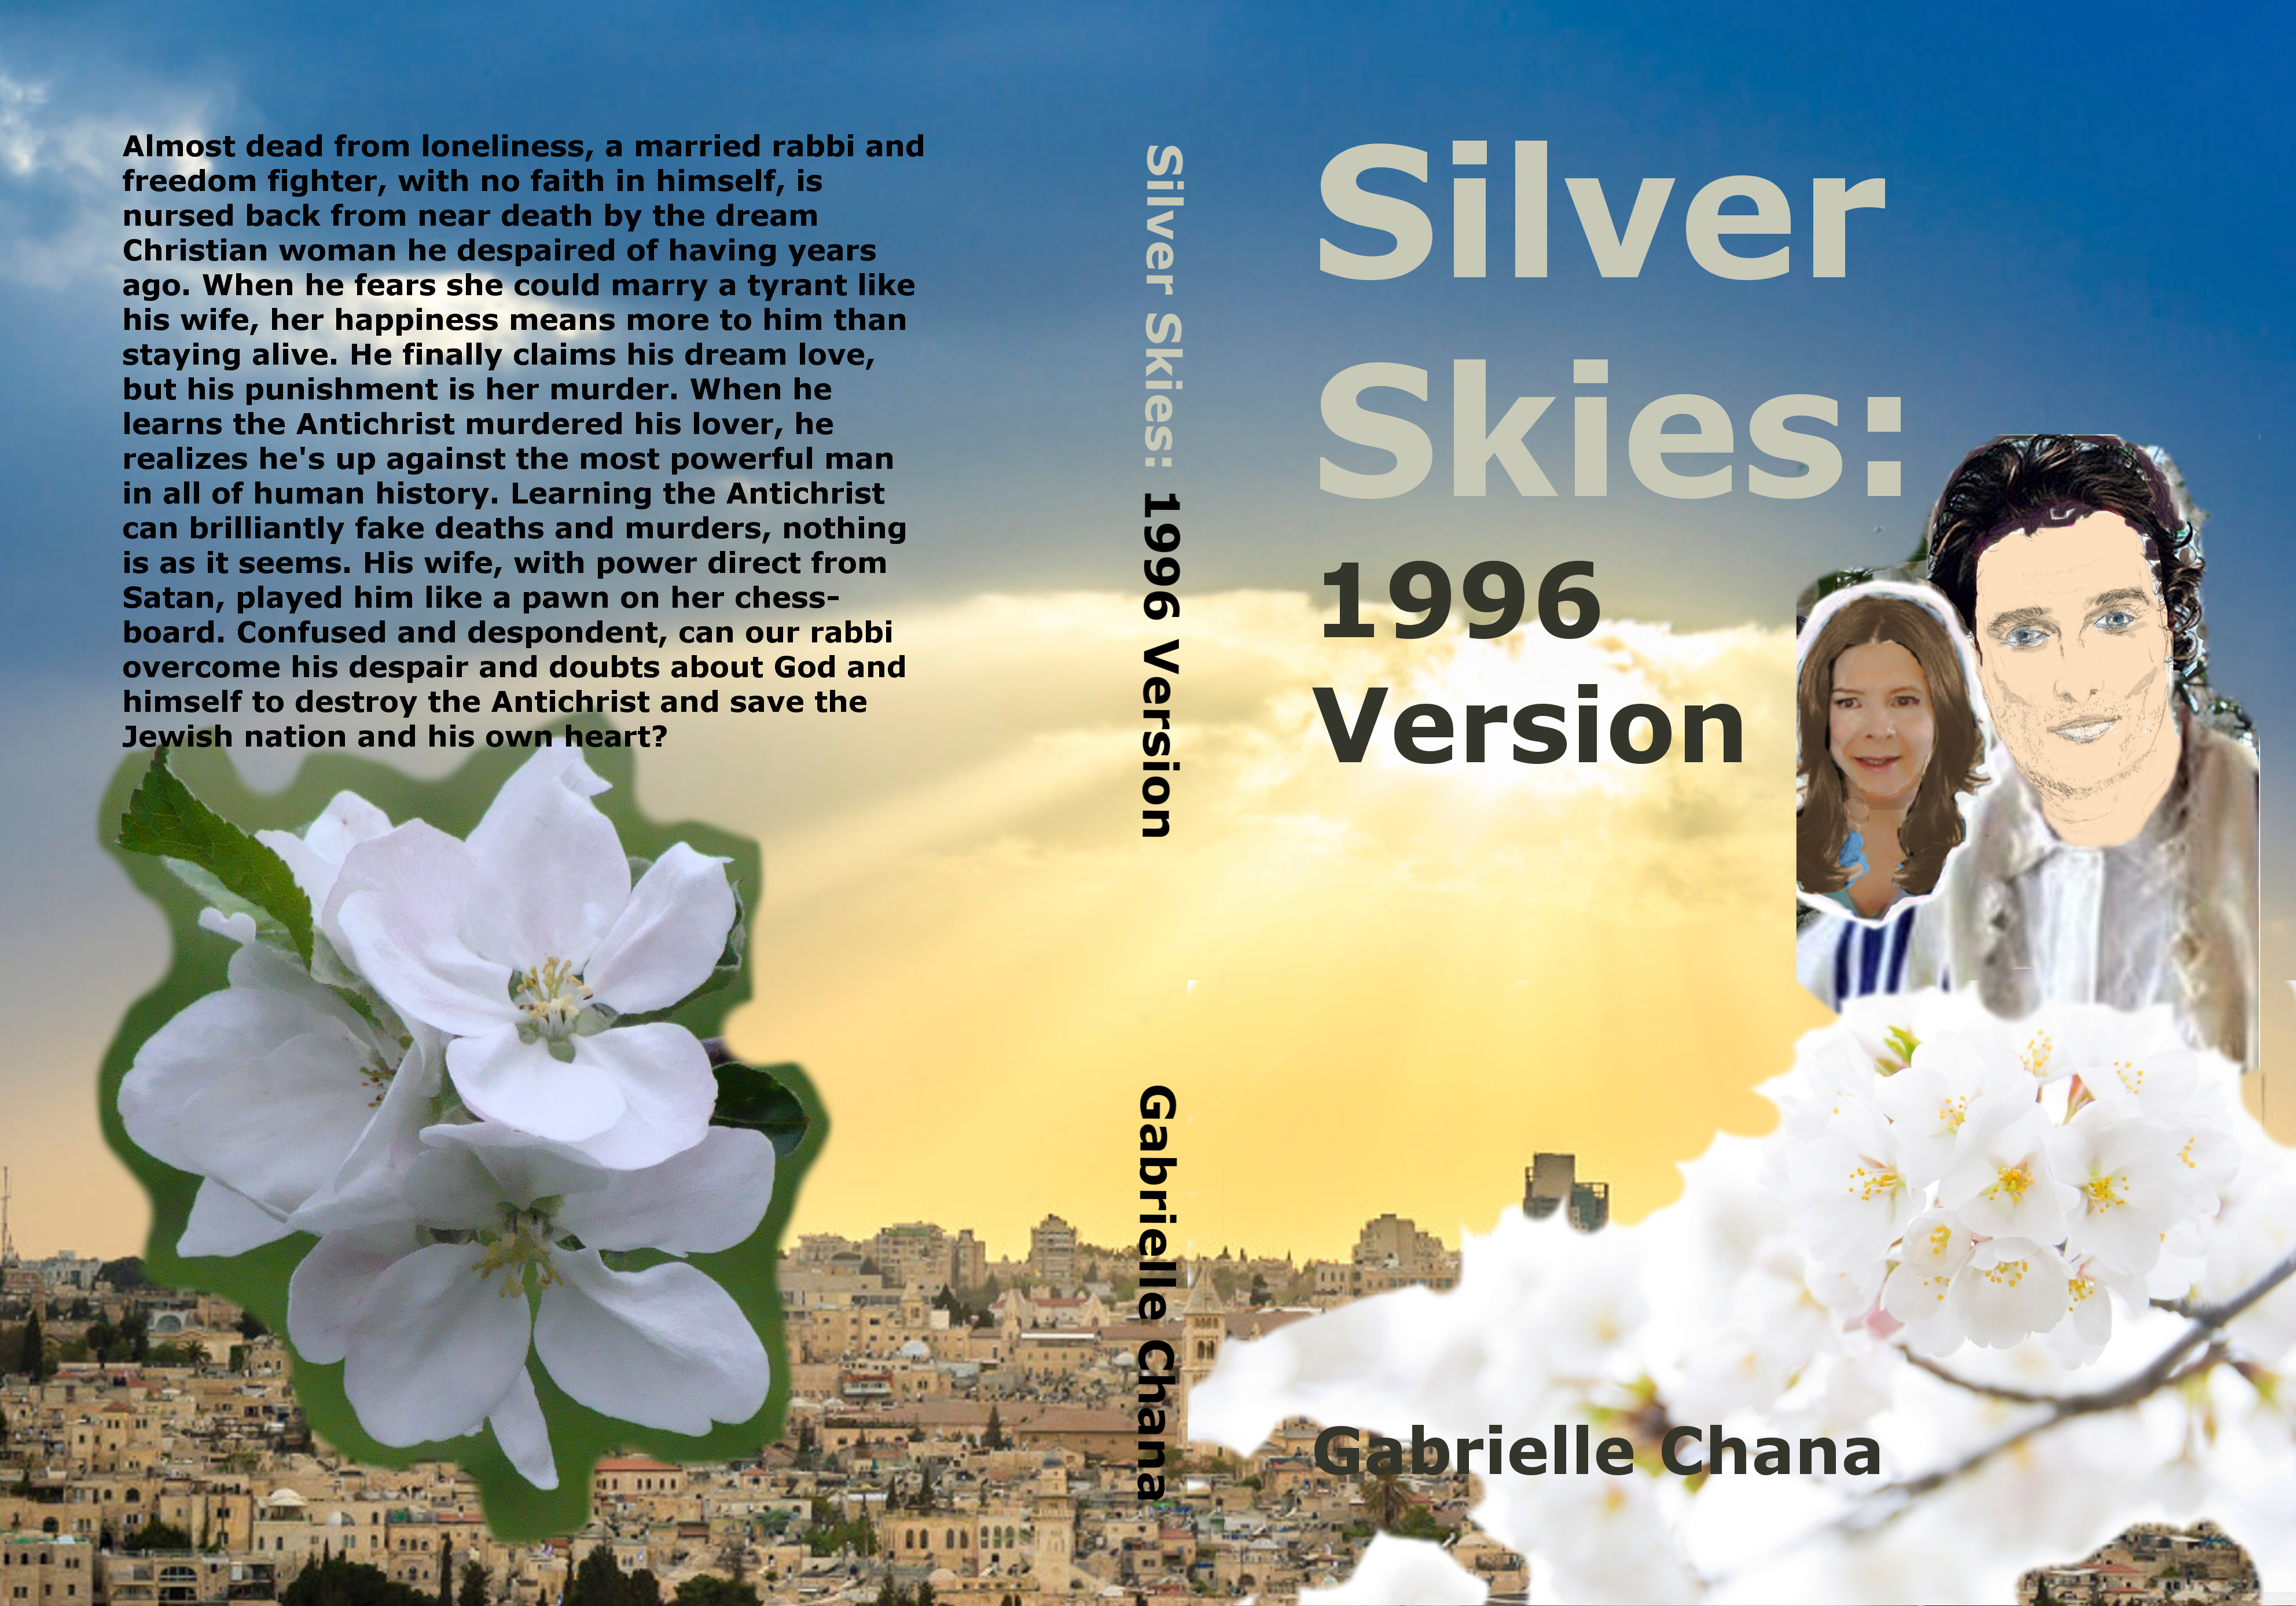 Silver Skies 05122020 1996 Version